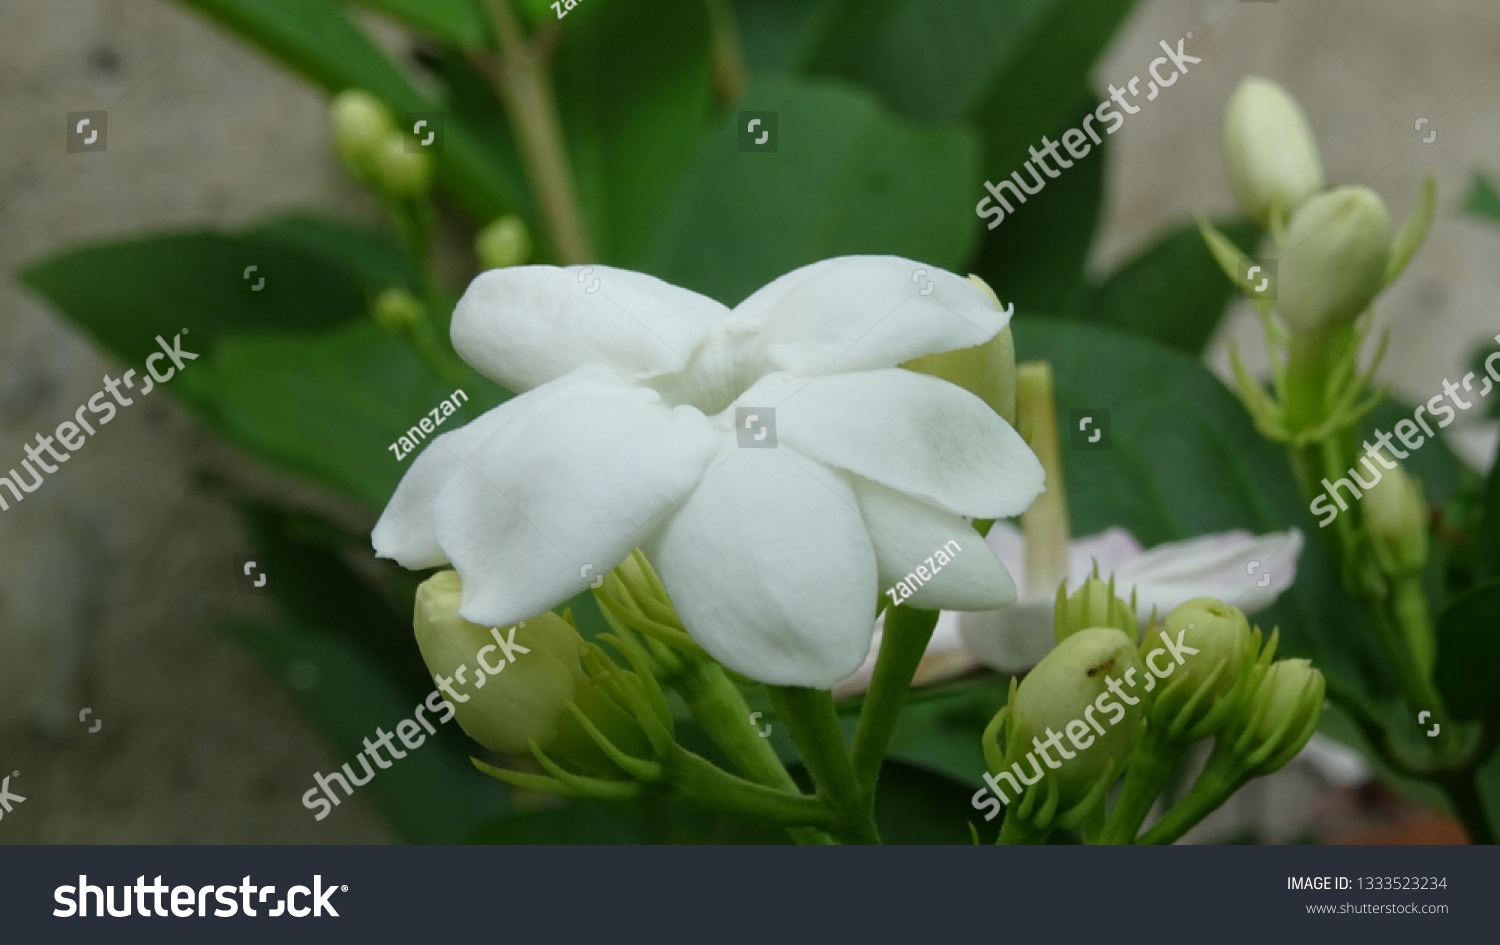 Bunga Melati Jasmine Flowers Morning Background Stock Photo 1333523234